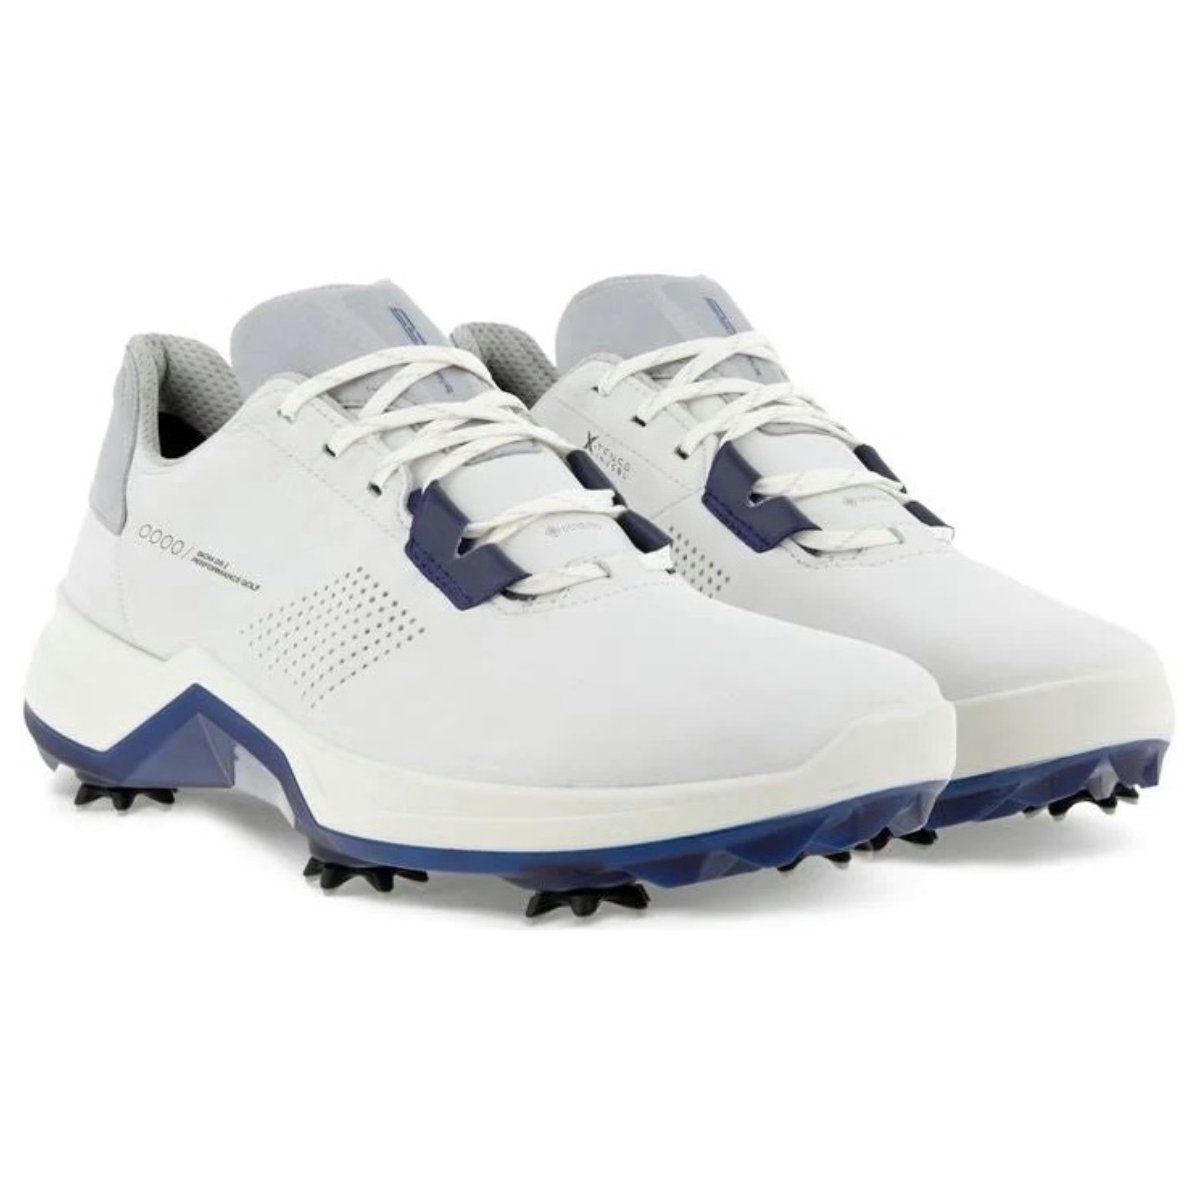 Golfschuh G5 Ecco Verbesserte X-TENSA Ecco Herren Depths Biom INVISIBLE Stabilität White/Blue durch TECHNOLOGIE